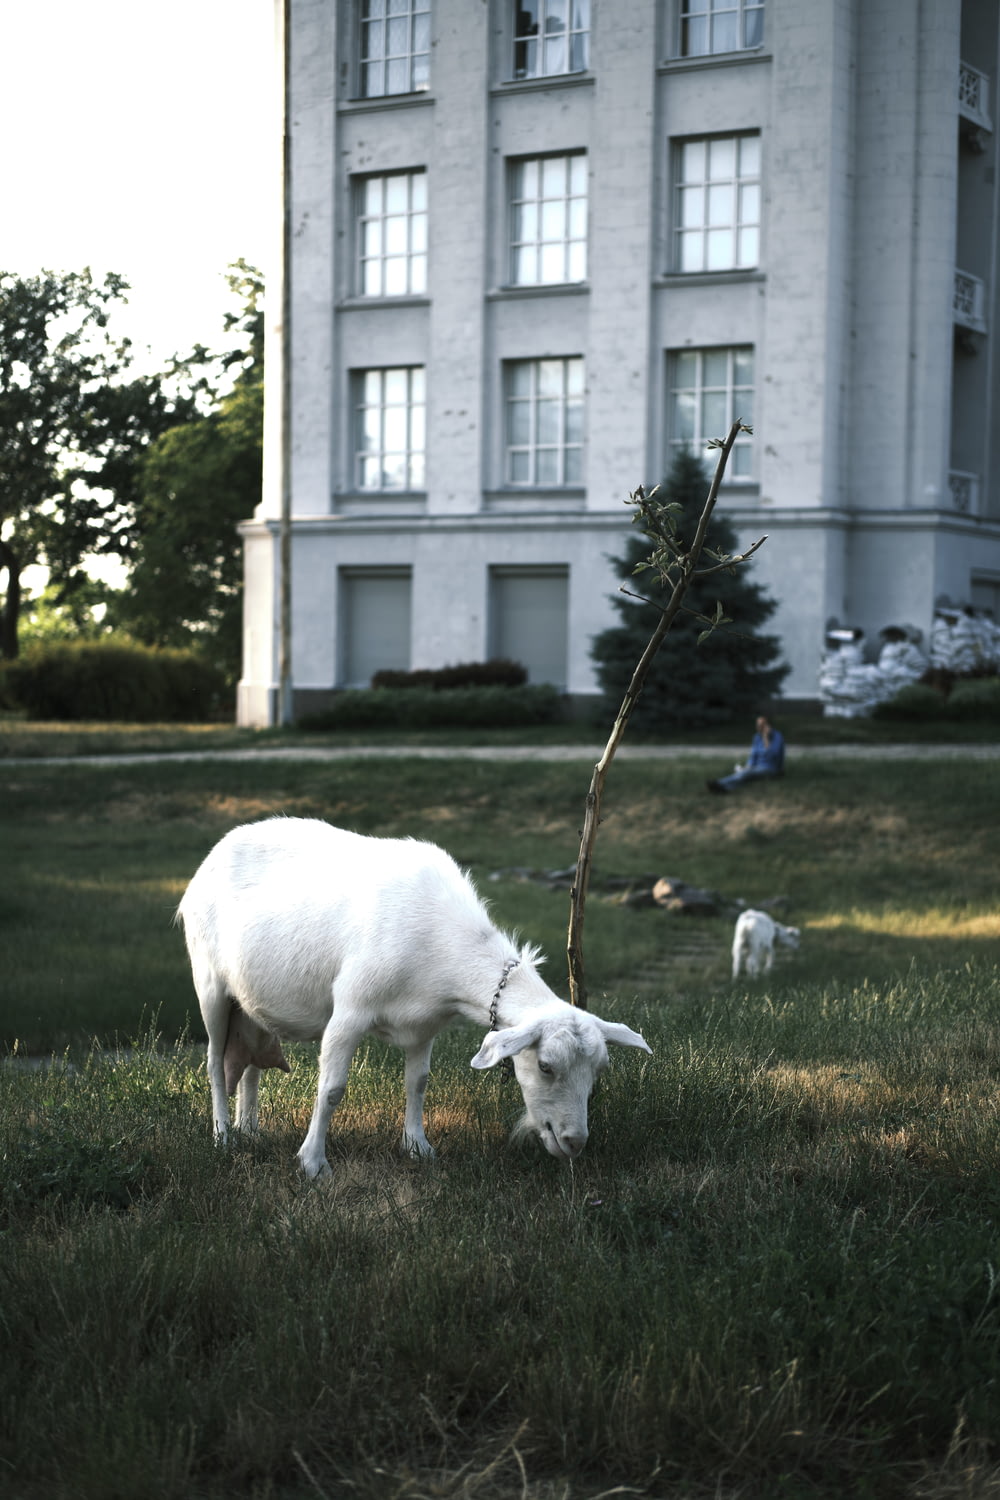 a white goat in a grassy field